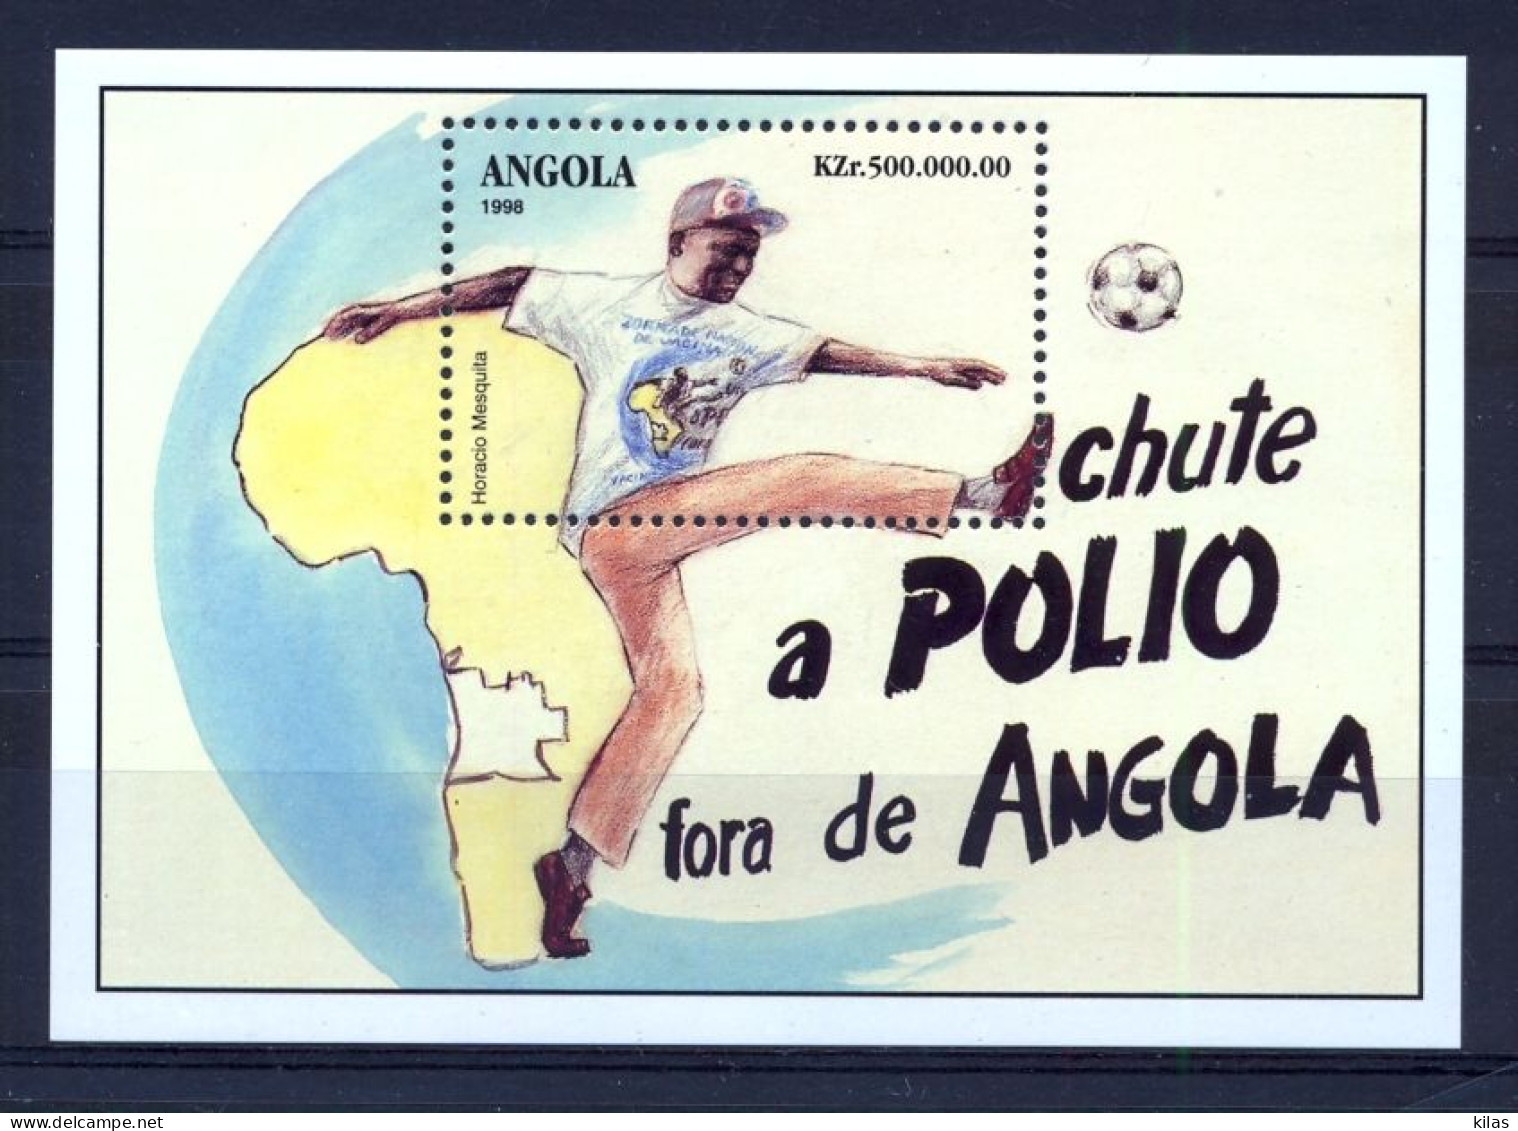 ANGOLA 1998 KICK POLIO MNH - Angola